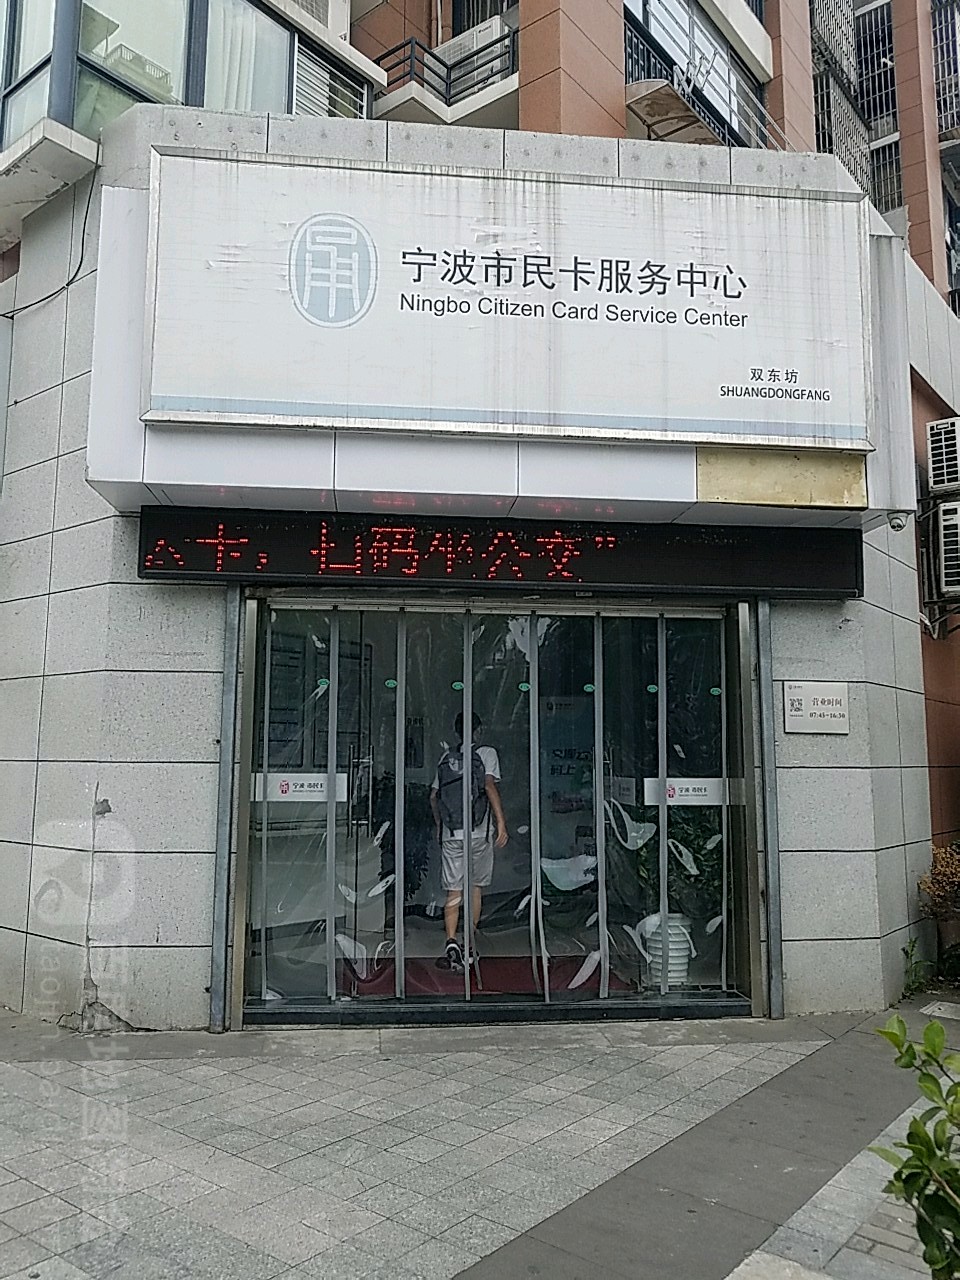 寧波市民卡服務中心(雙東路)